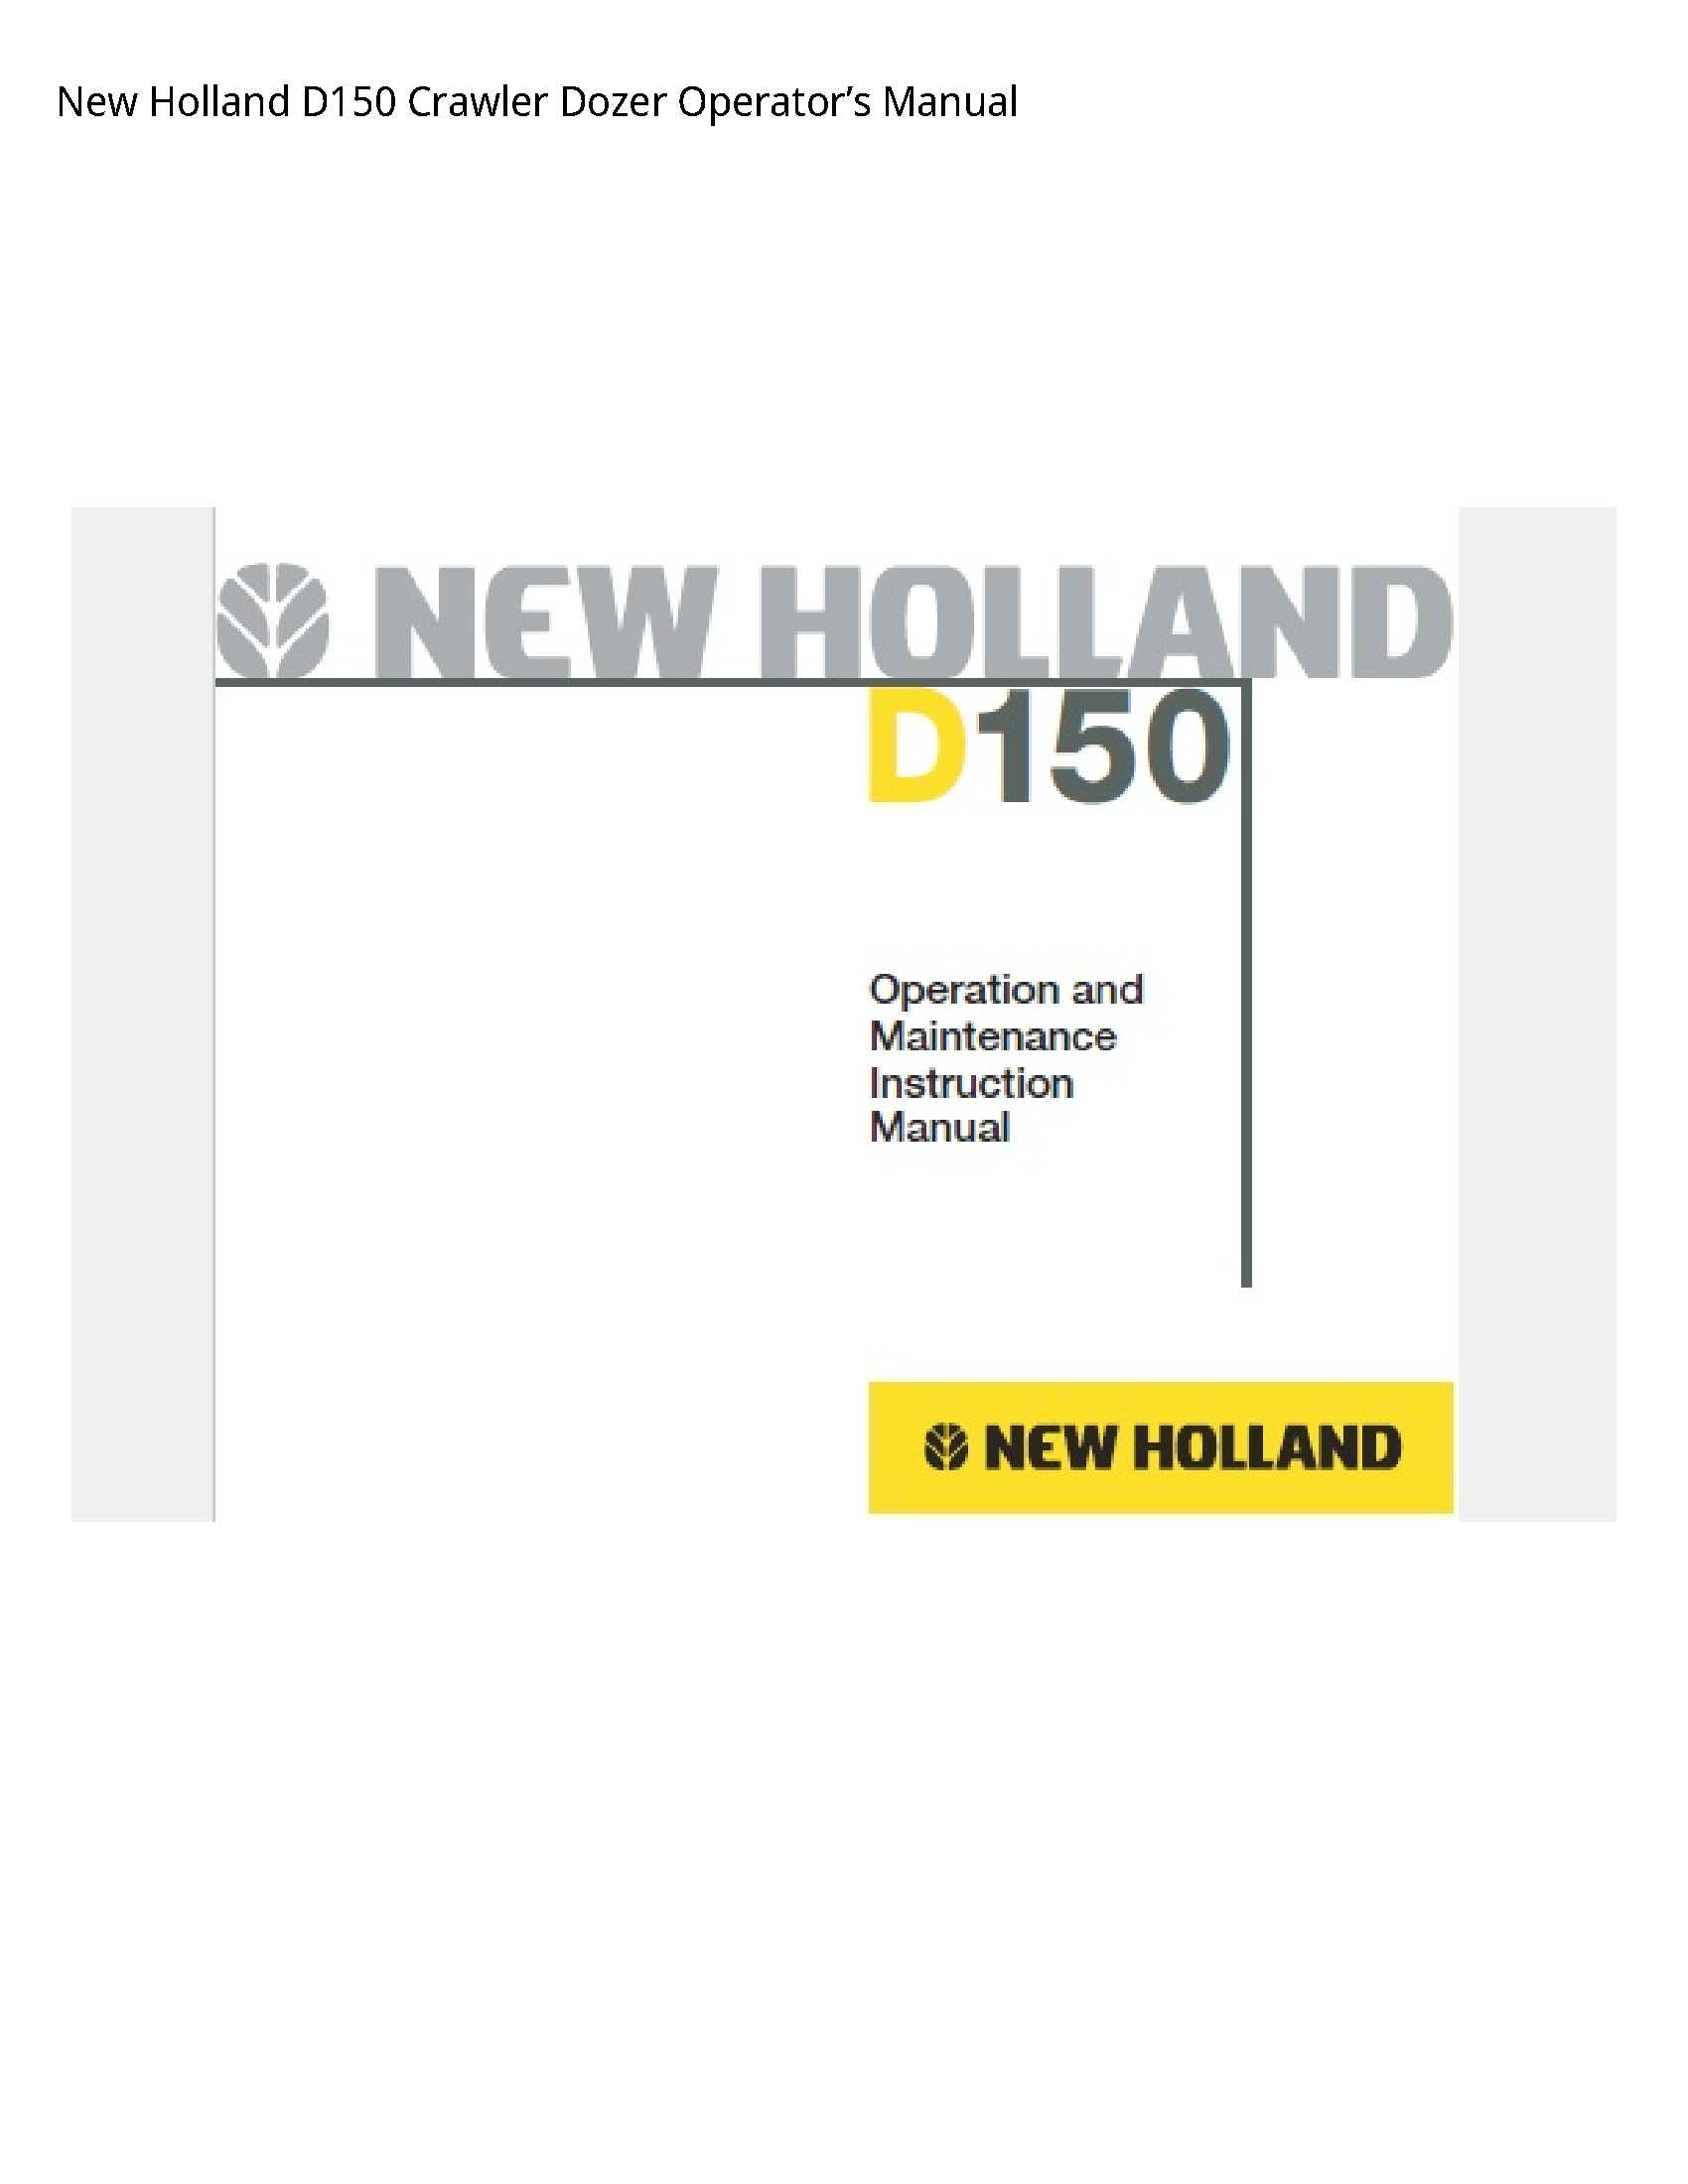 New Holland D150 Crawler Dozer Operator’s manual